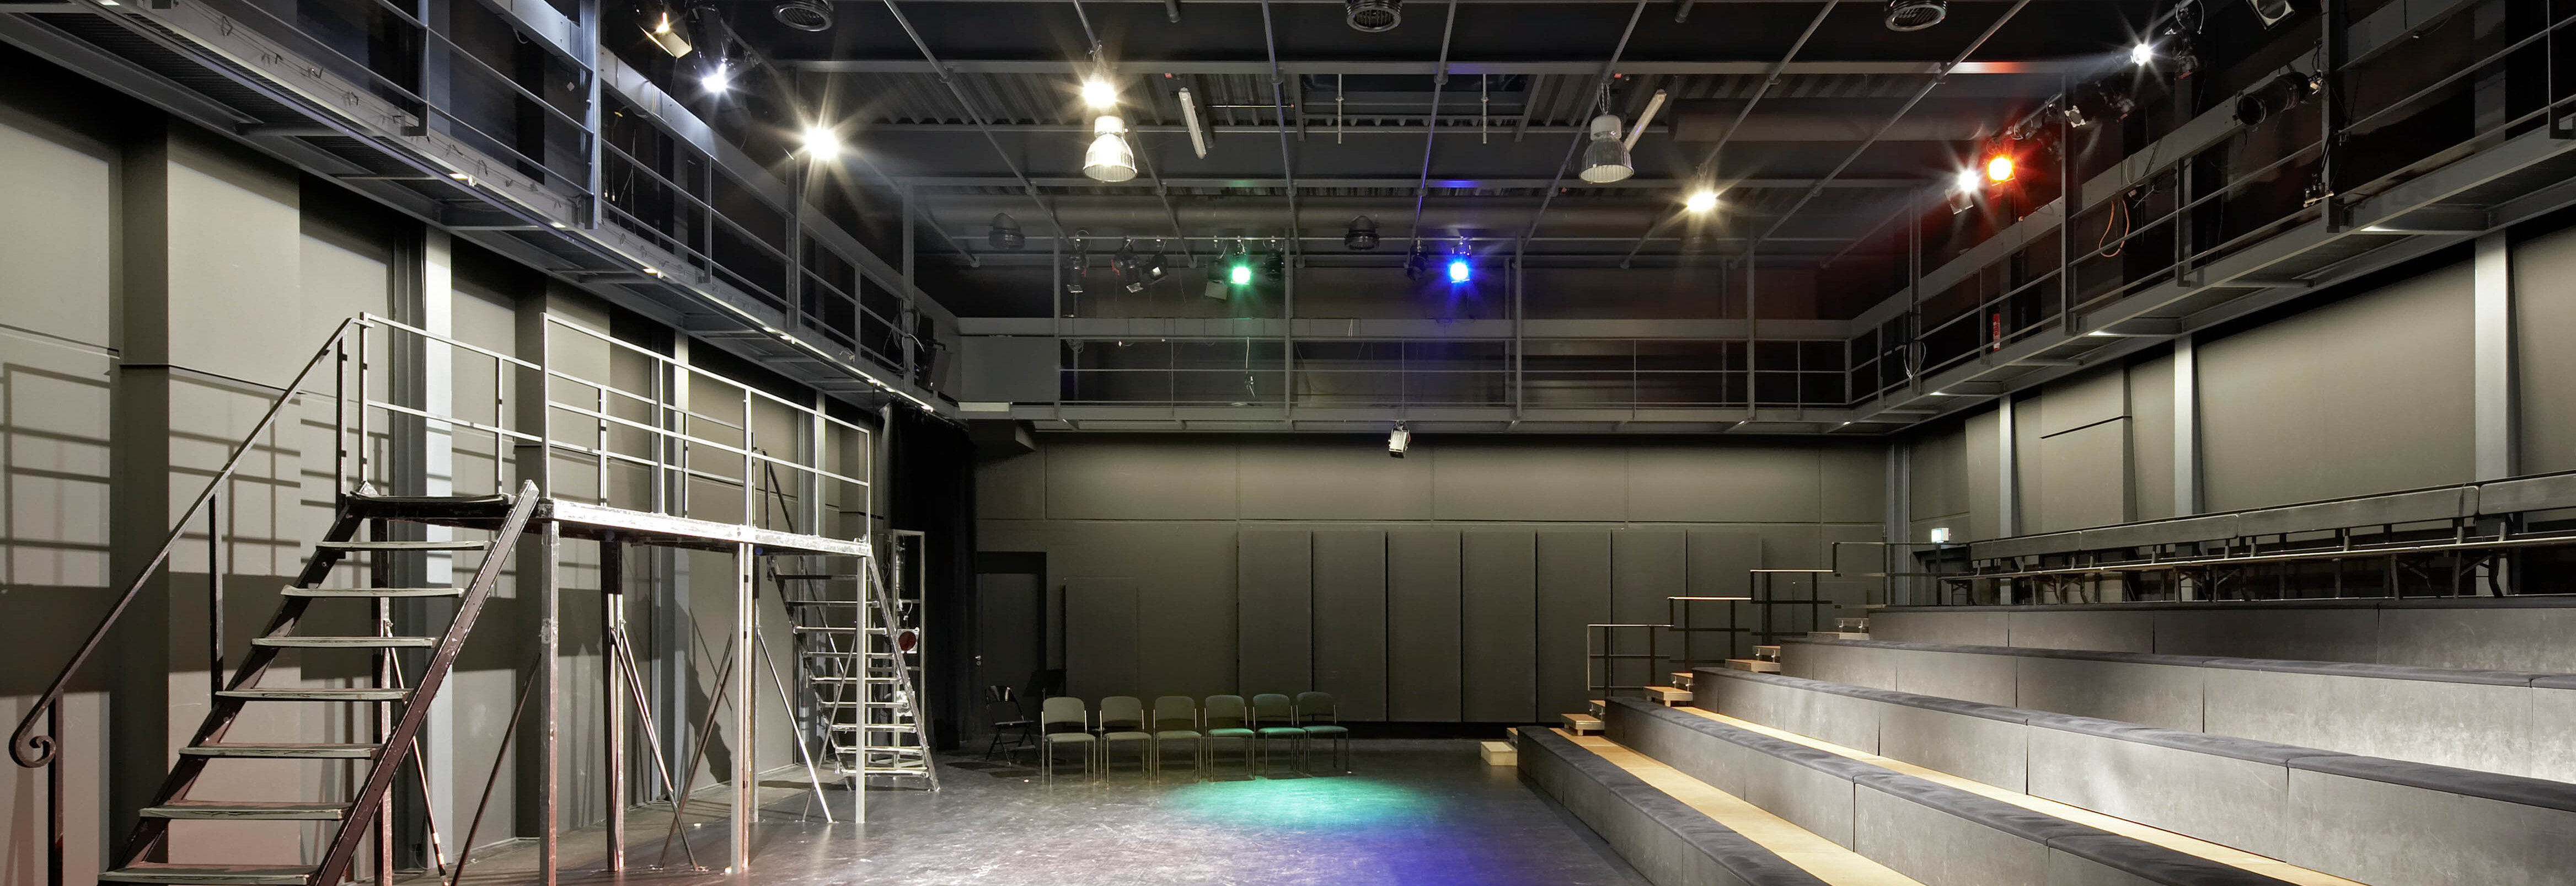 Innenansicht eines modernen Theatersaals mit Beleuchtung und Sitzplätzen